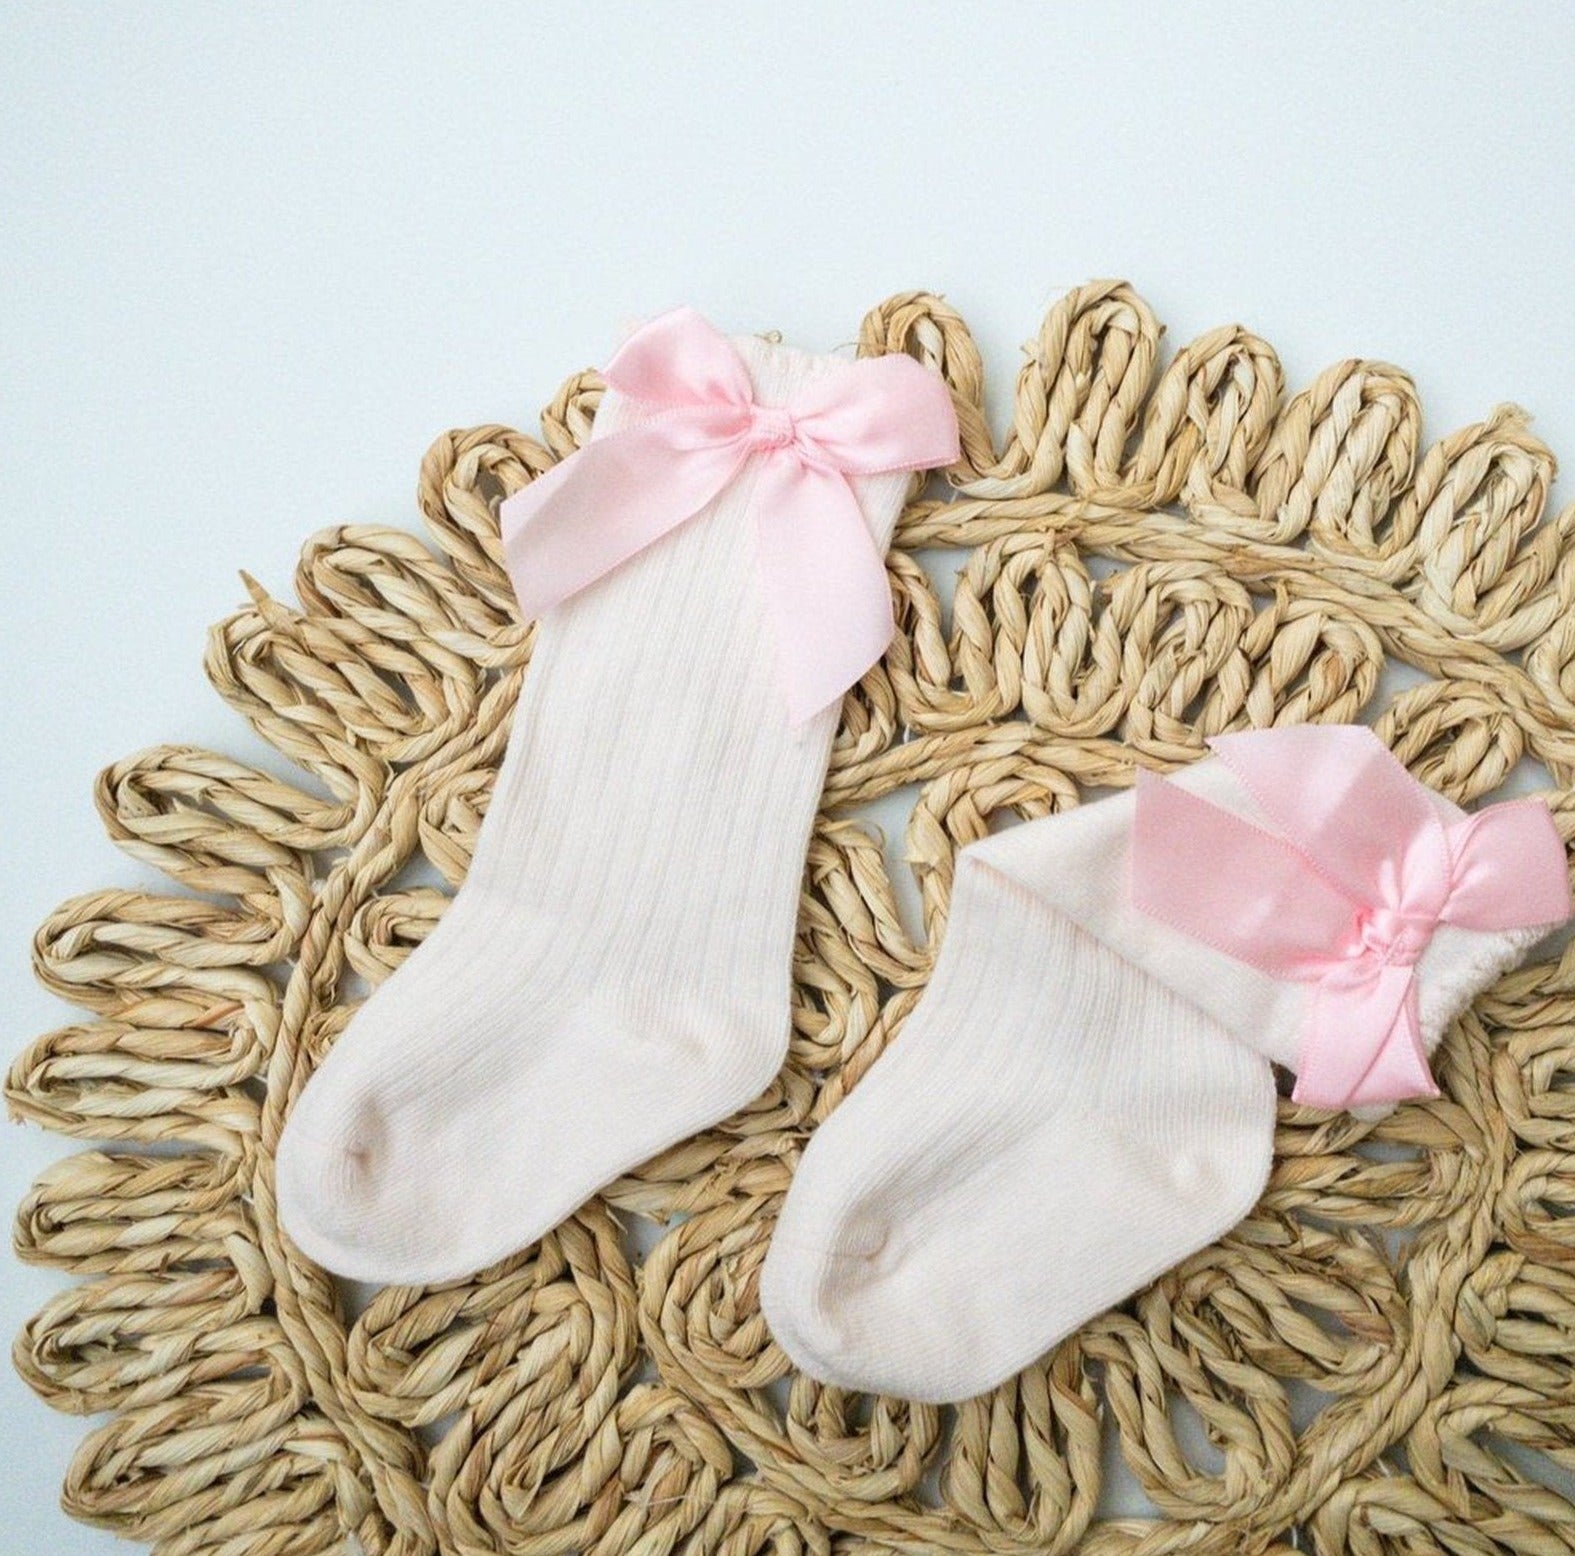 Naomi Ribbon Knit Socks